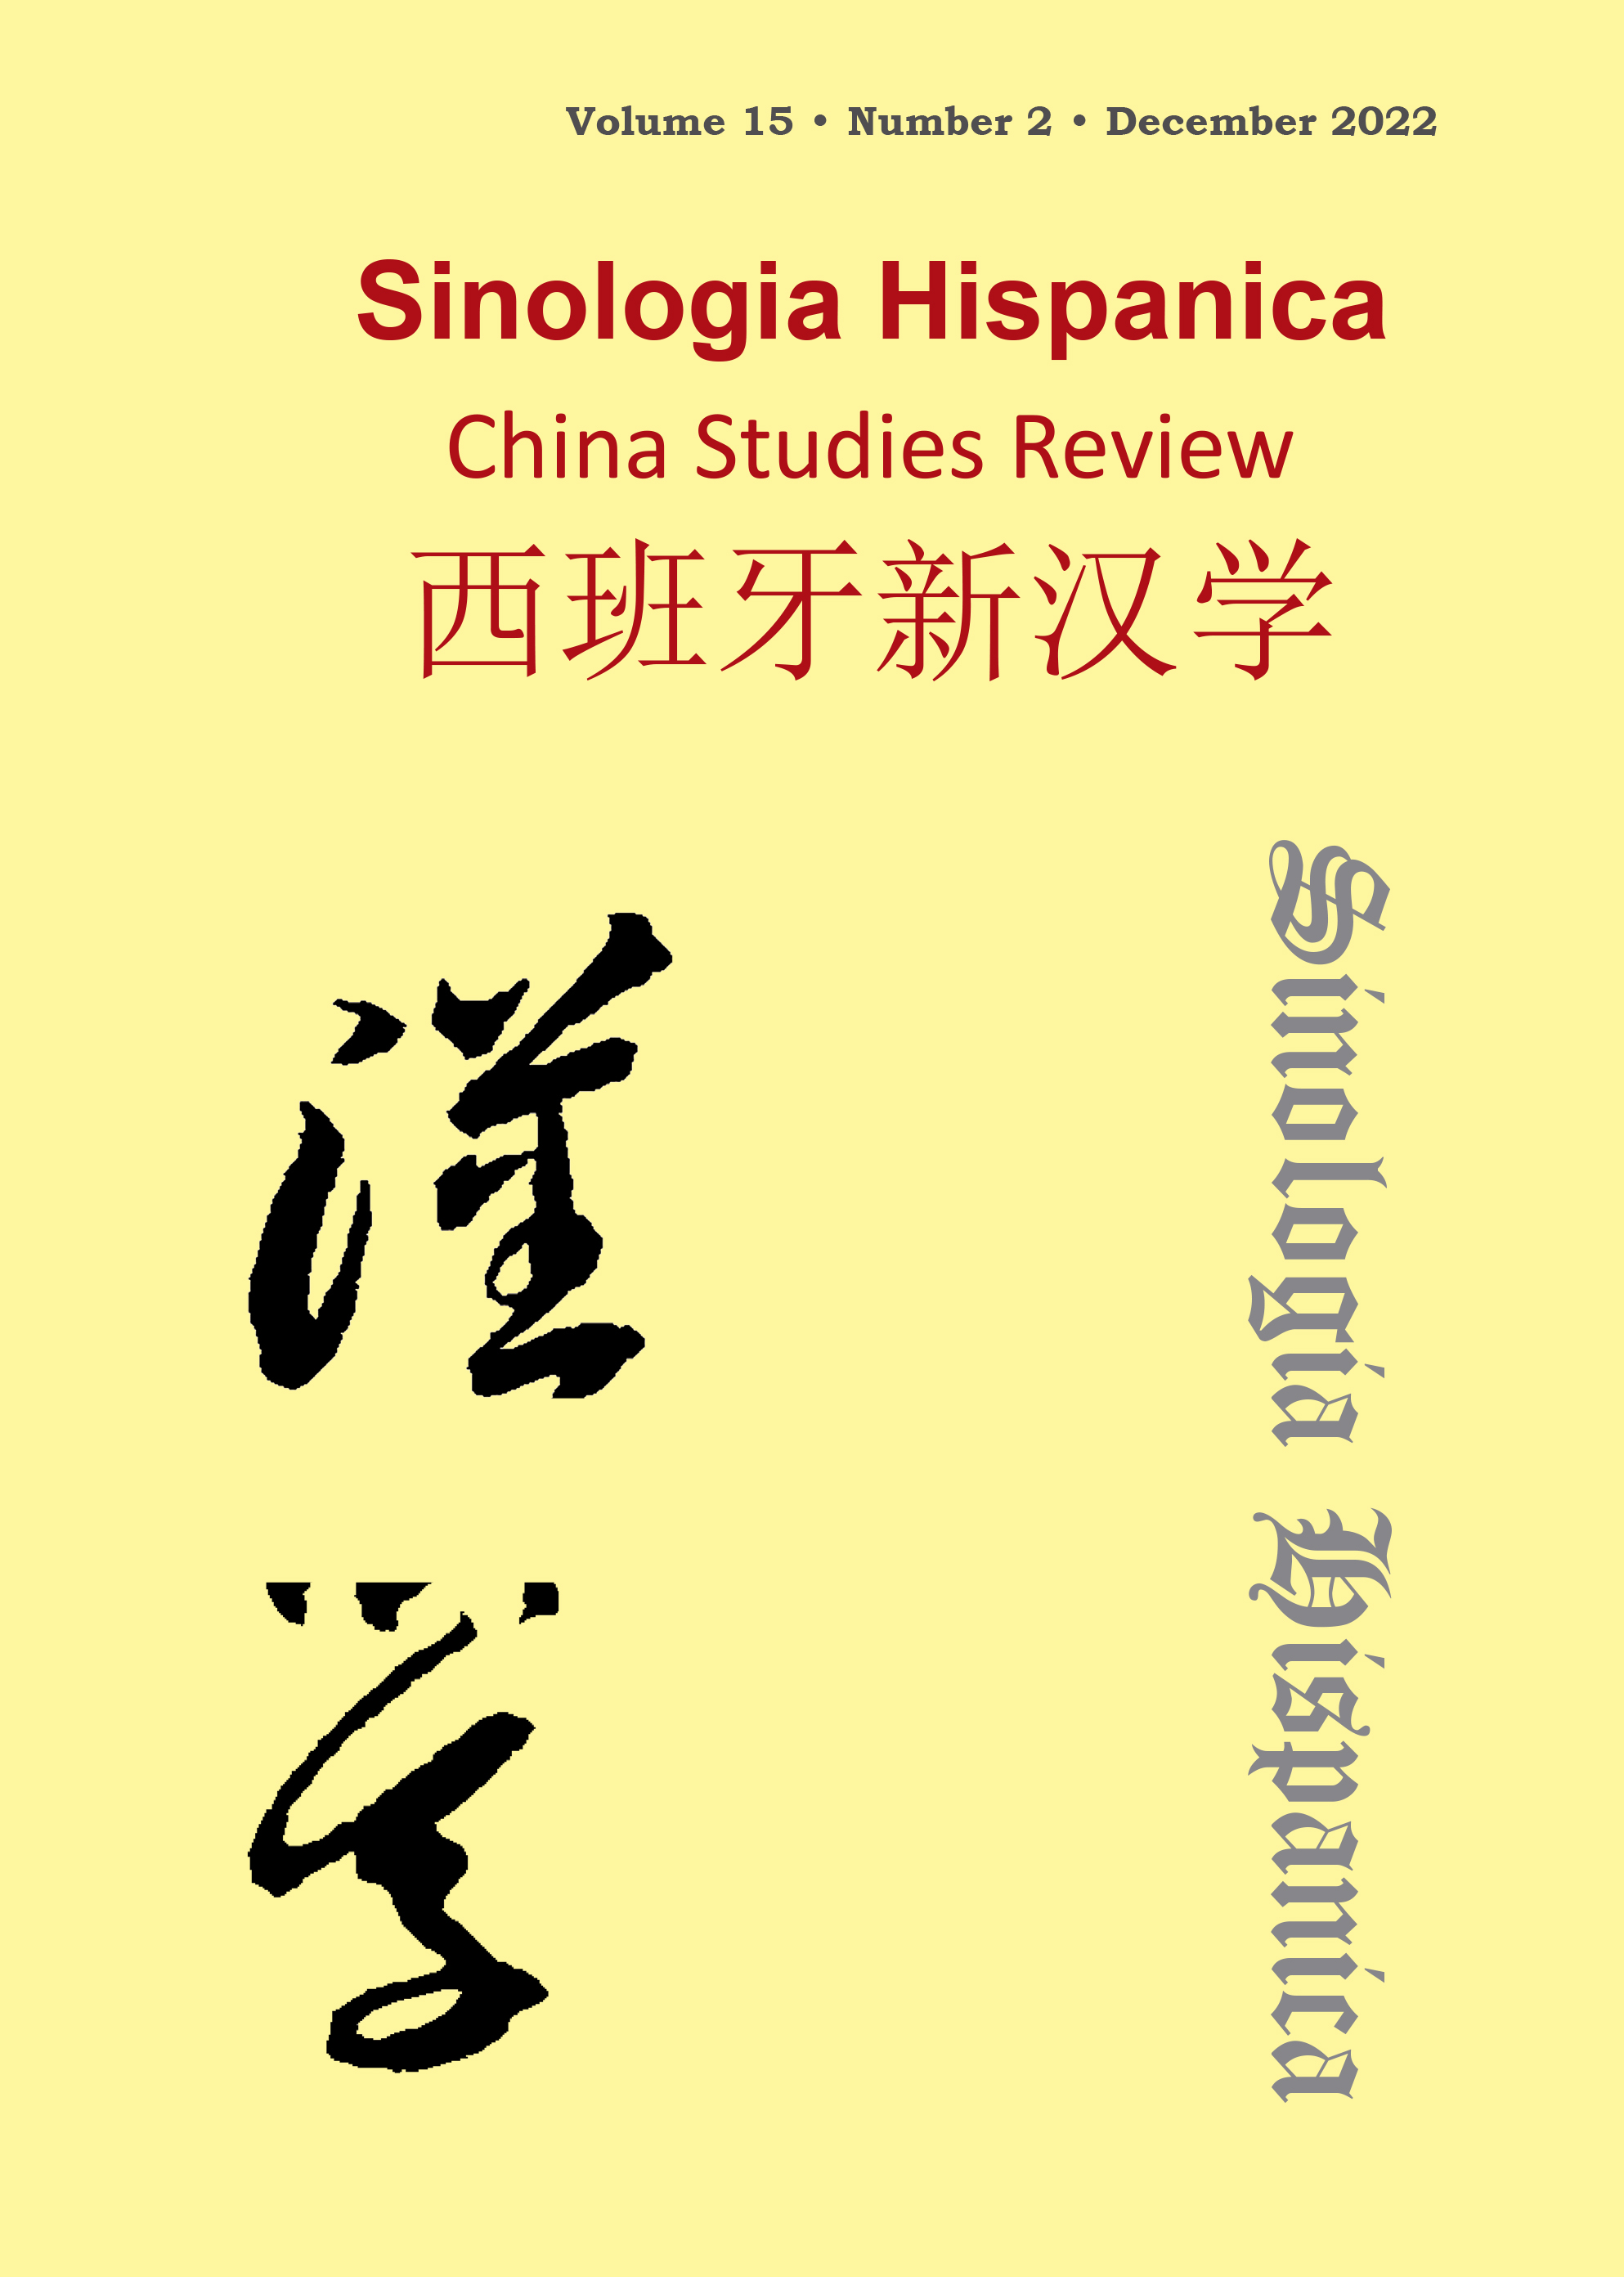 Desarrollo Sostenible de la Comunicación Lingüística: Localización e Innovación de los Institutos Confucio en España